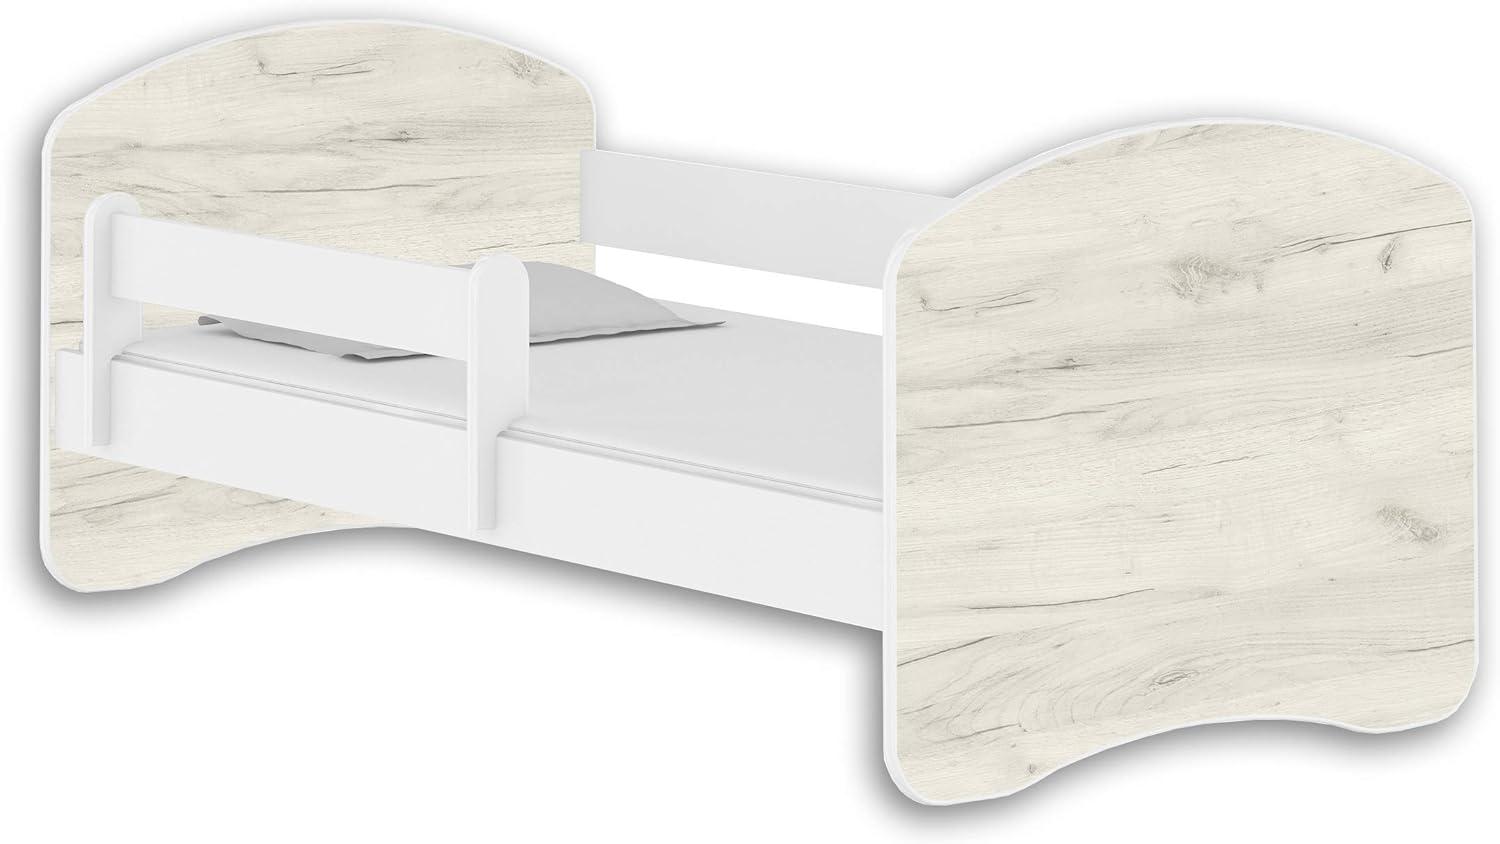 Jugendbett Kinderbett mit einer Schublade mit Rausfallschutz und Matratze Weiß ACMA II 140 160 180 (160x80 cm, Weiß - Eiche Weiß) Bild 1